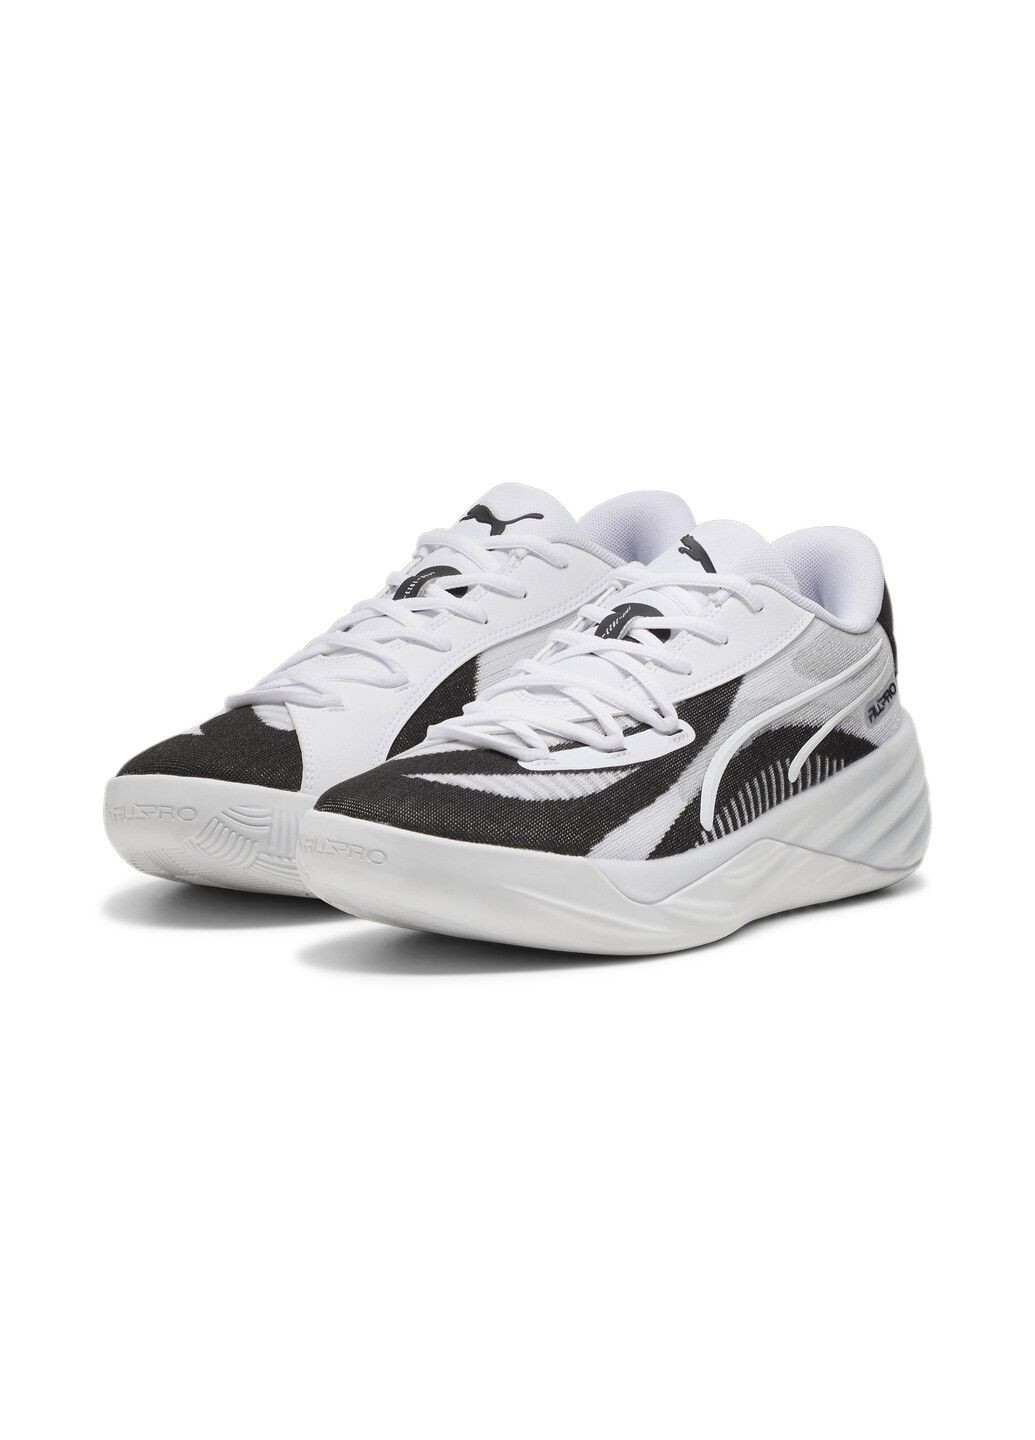 Белые всесезонные кроссовки all-pro nitro team basketball shoes Puma